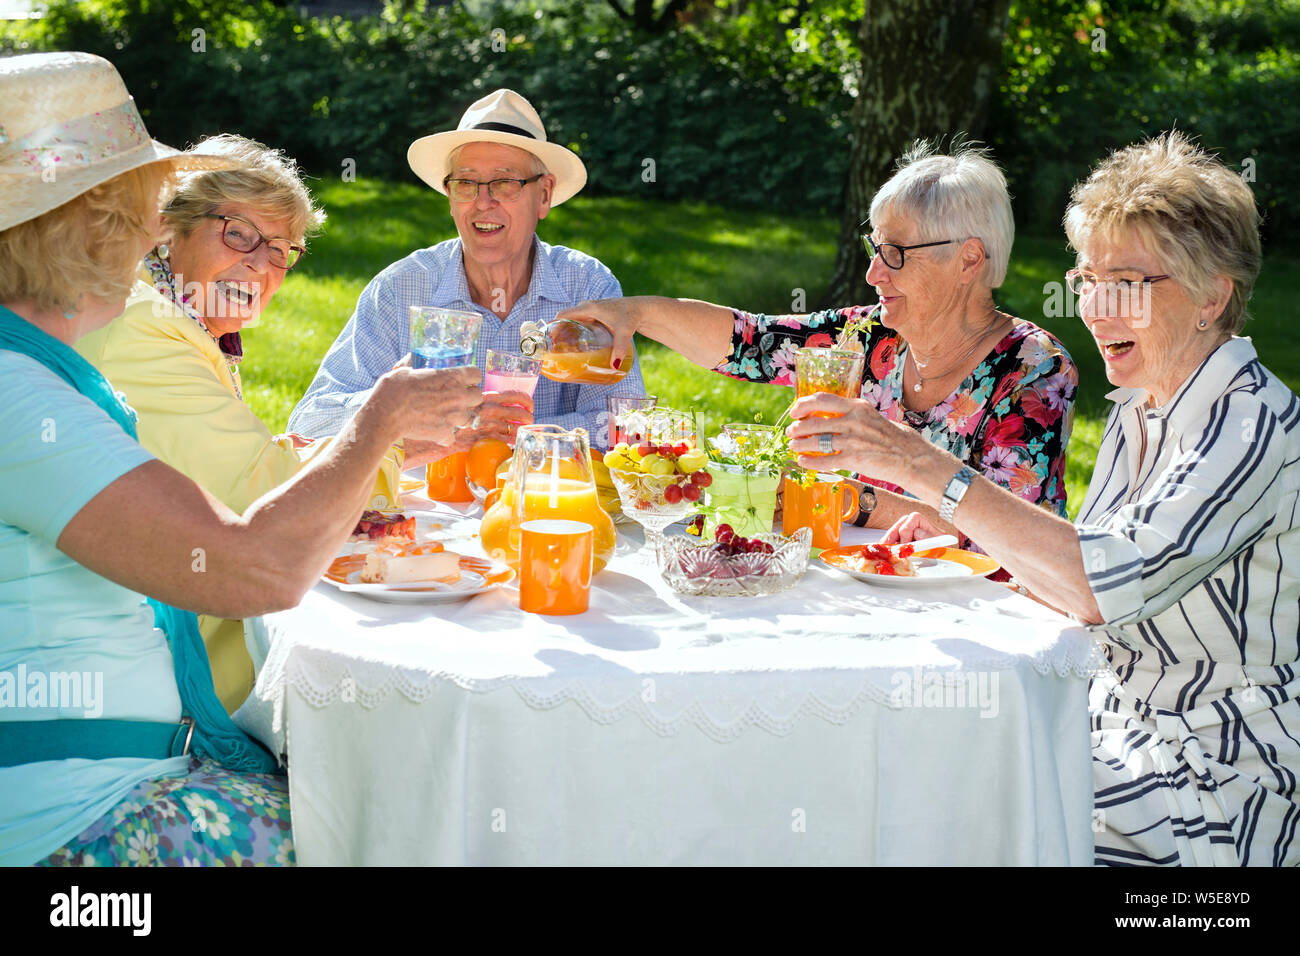 Felici gli anziani seduti attorno al tavolo picnic. Gruppo di anziani di mangiare la torta di frutta e bere il succo d'arancia, una donna serve succhi di frutta. Foto Stock